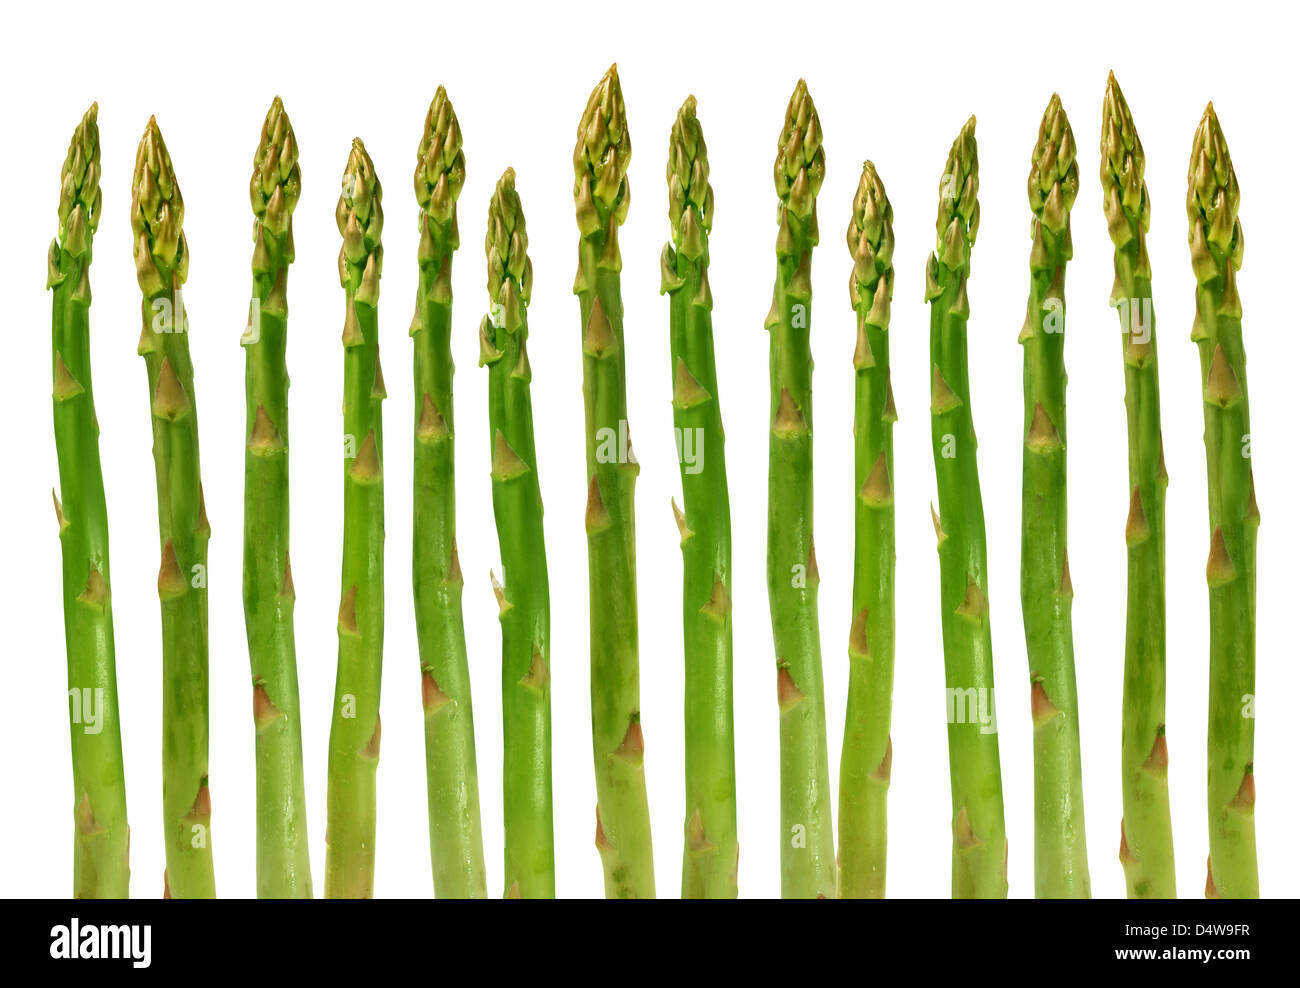 Gruppo di asparagi verdi ortaggi sani organizzati in una riga isolata su uno sfondo bianco come un cibo concetto di salute Dieta e vivere una naturale montare ben nutrita la vita. Foto Stock